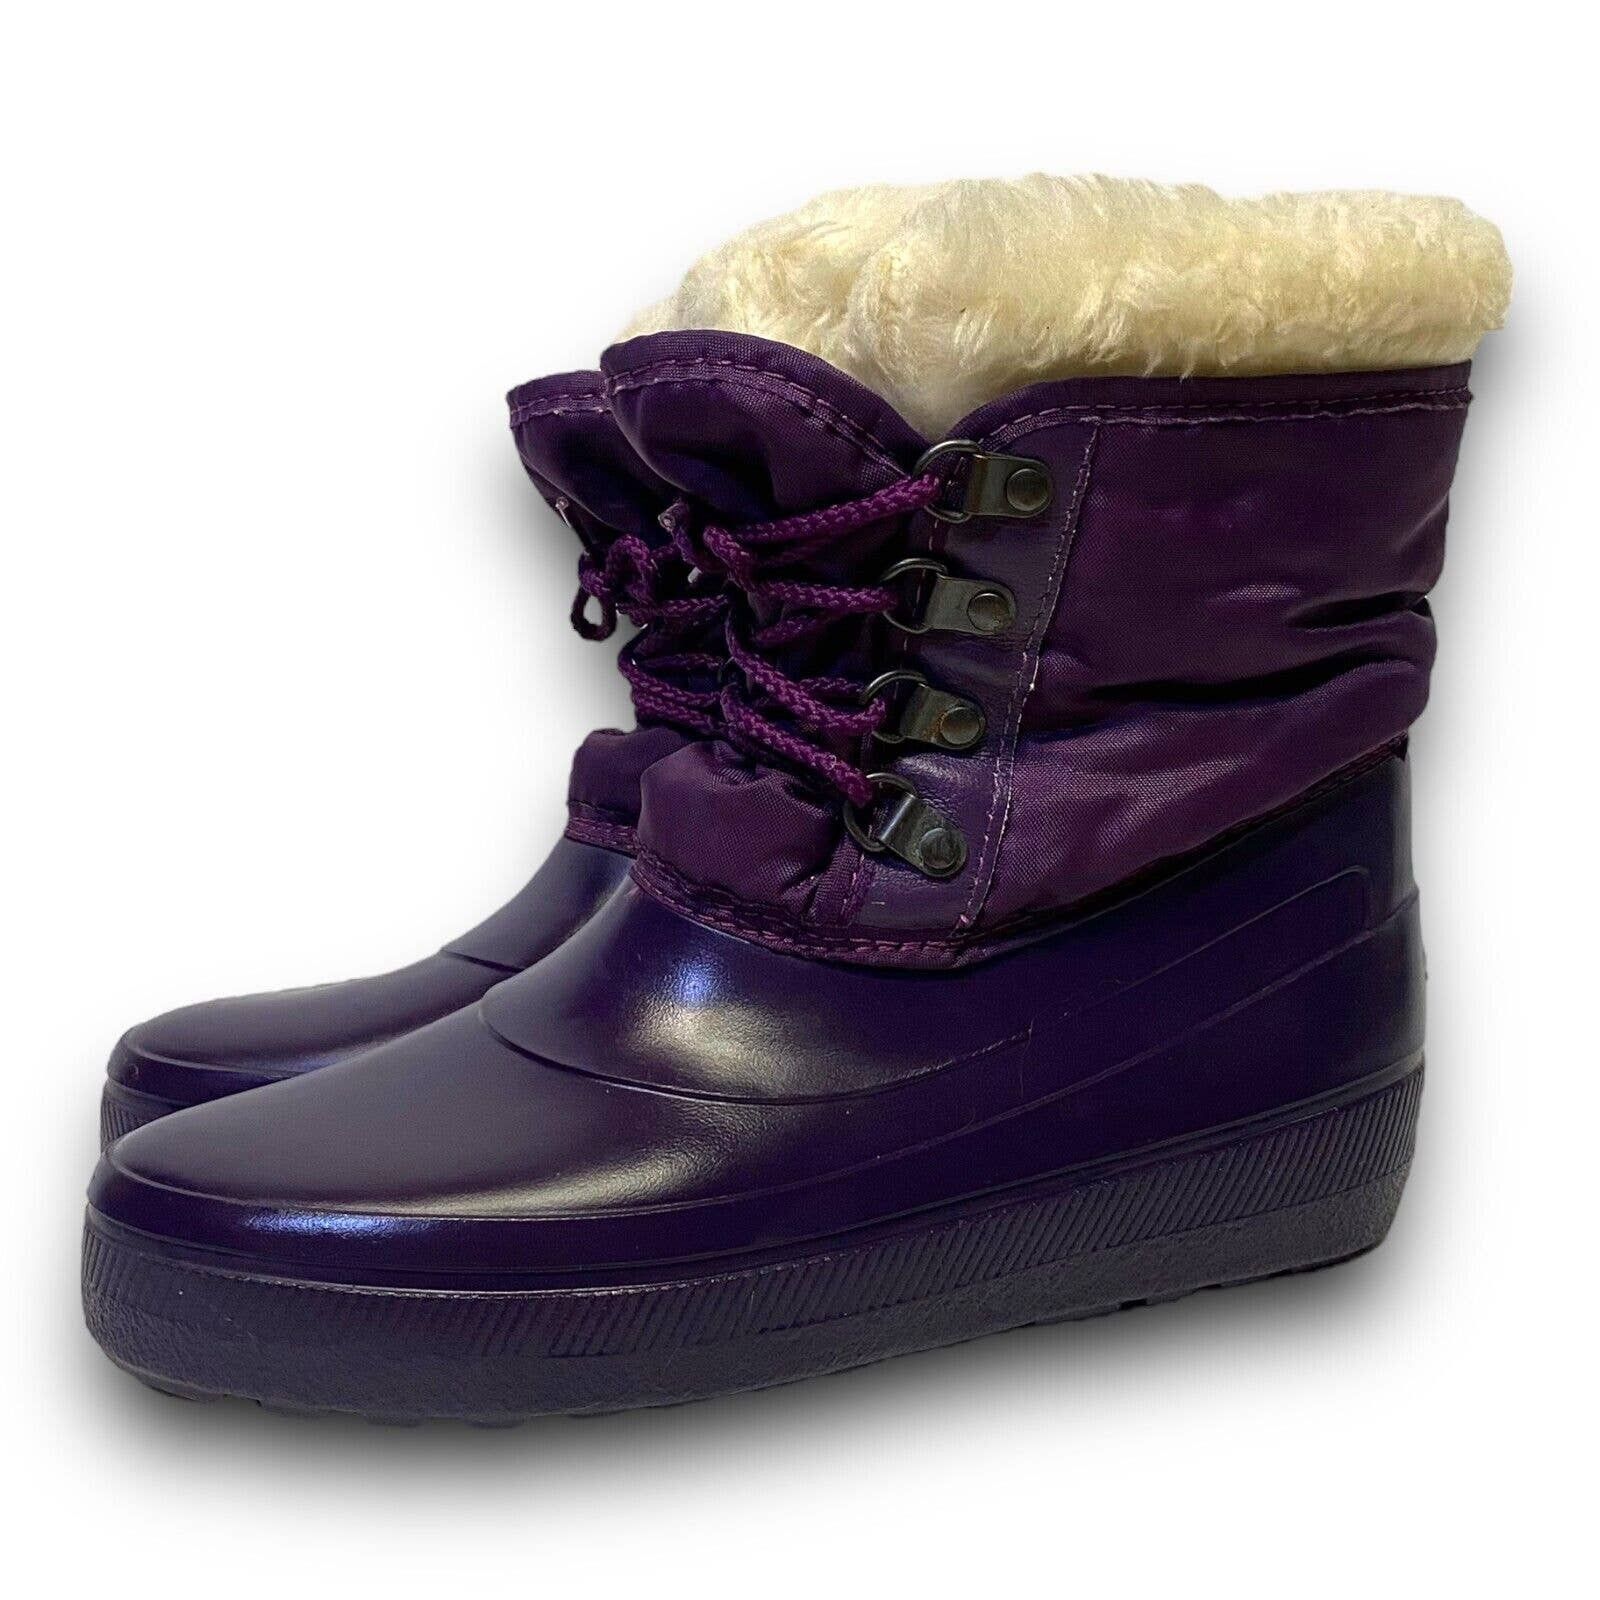 Vintage Vintage Sorel Purple Fur Lined Rubber Winter Rain Snow Boots Size US 5 / IT 35 - 13 Preview